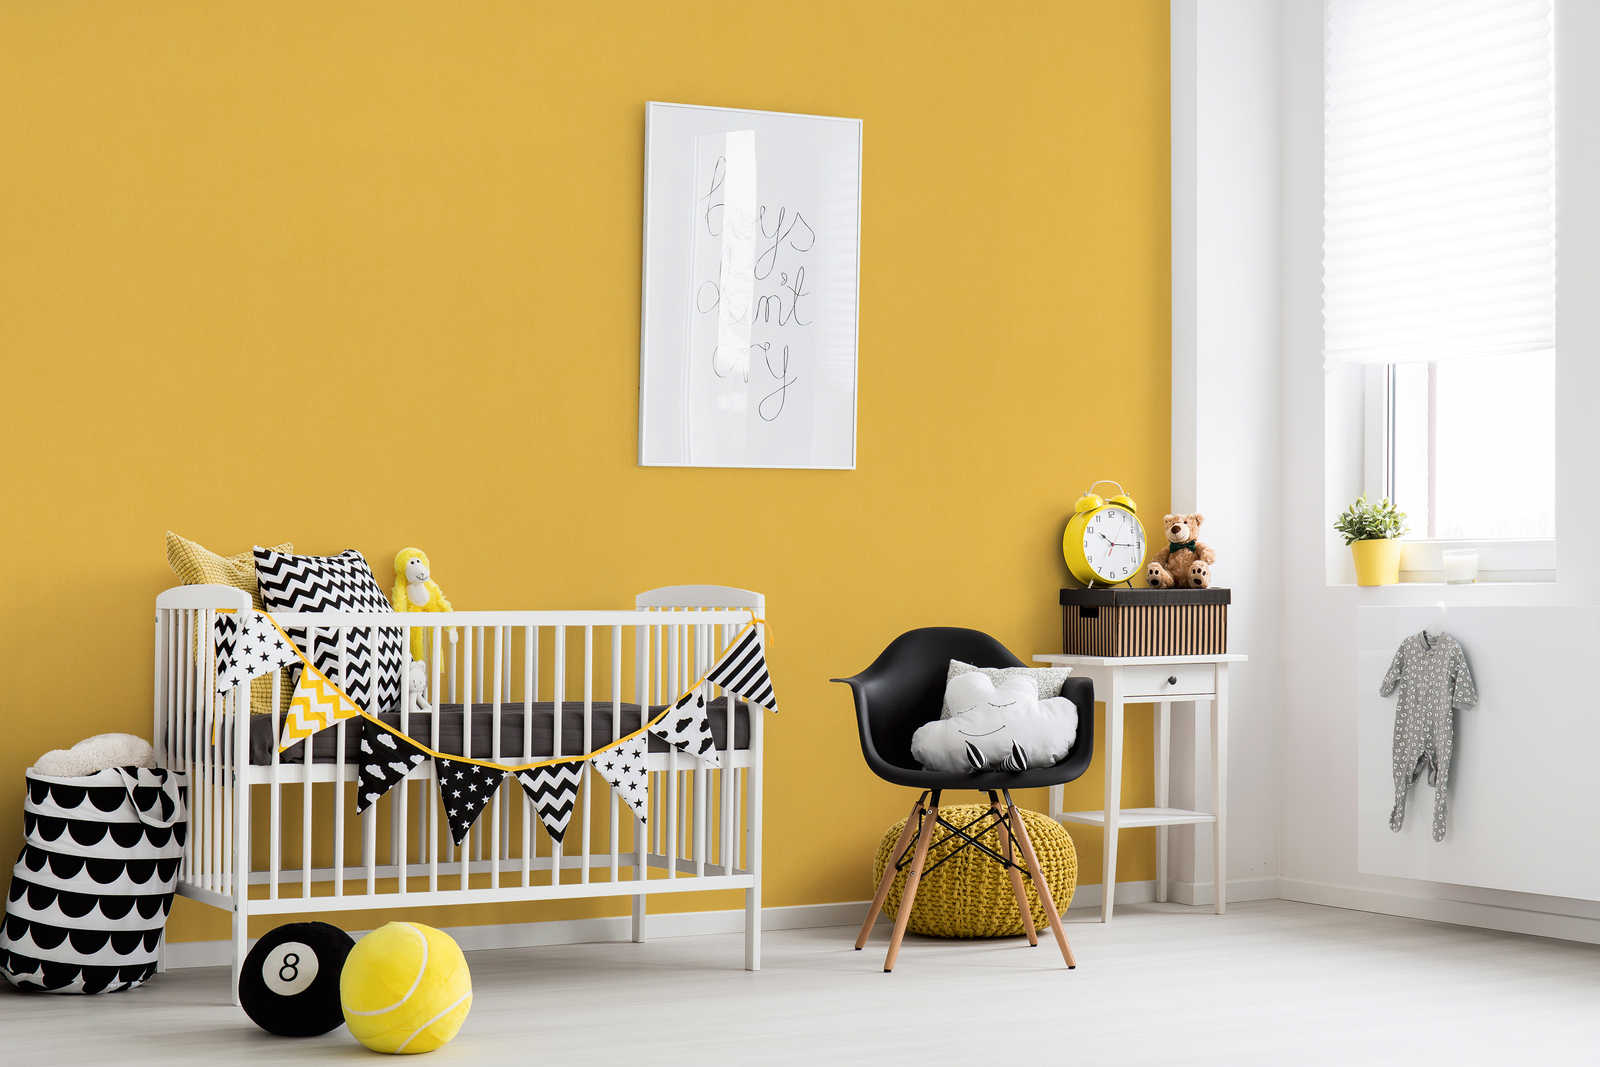             Senfgelbe Tapete Kinderzimmer einfarbig – Gelb
        